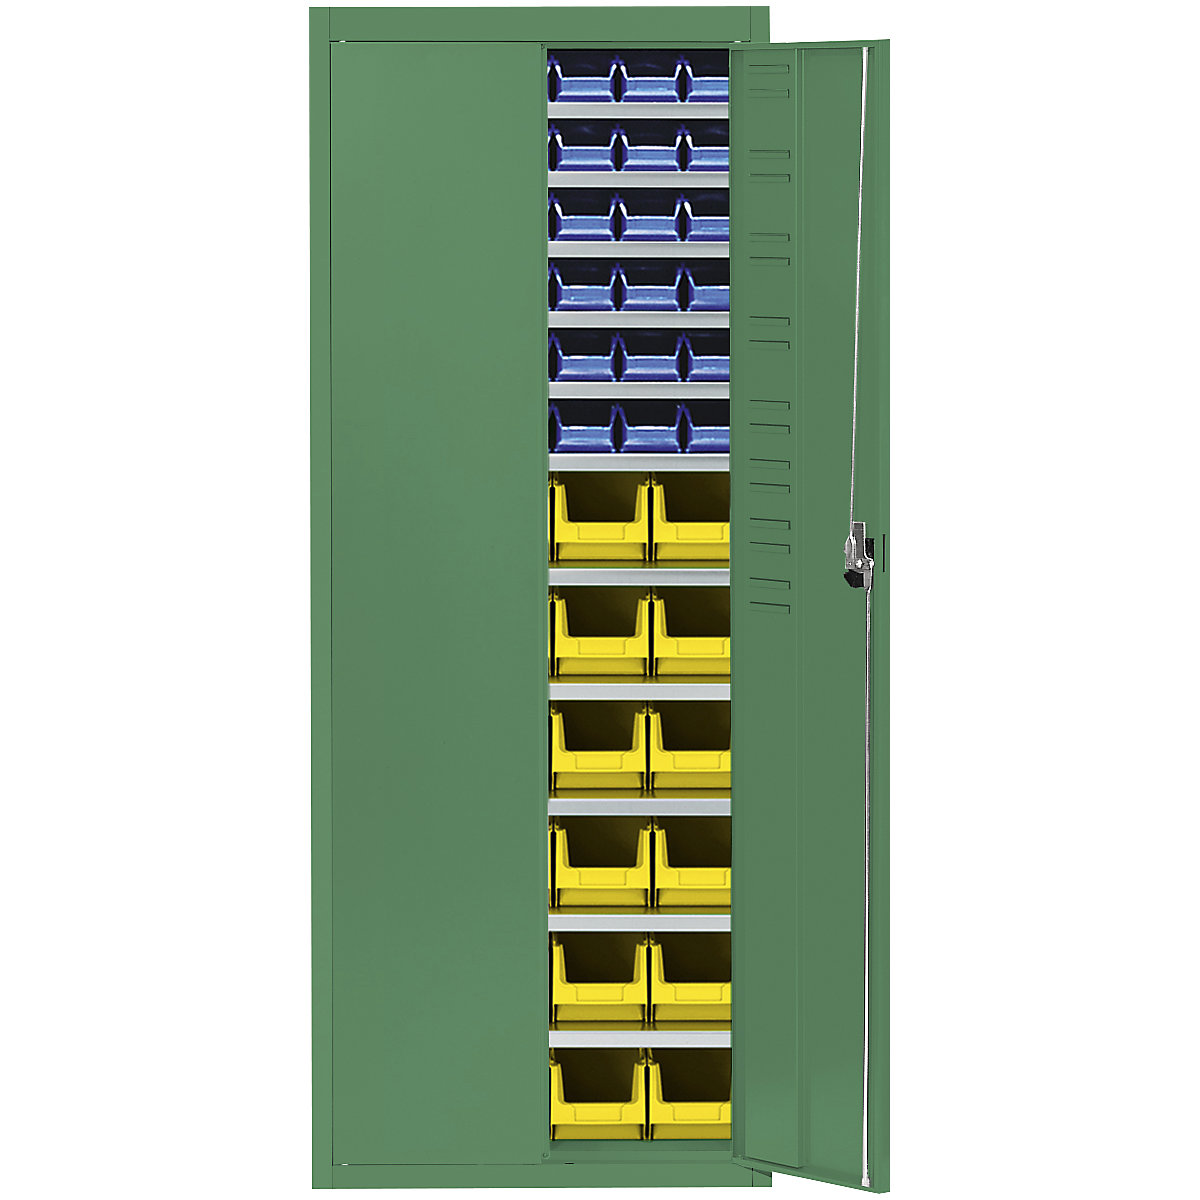 Skladiščna omara z odprtimi skladiščnimi posodami – mauser, VxŠxG 1740 x 680 x 280 mm, ena barva, zelena, 60 posod-7